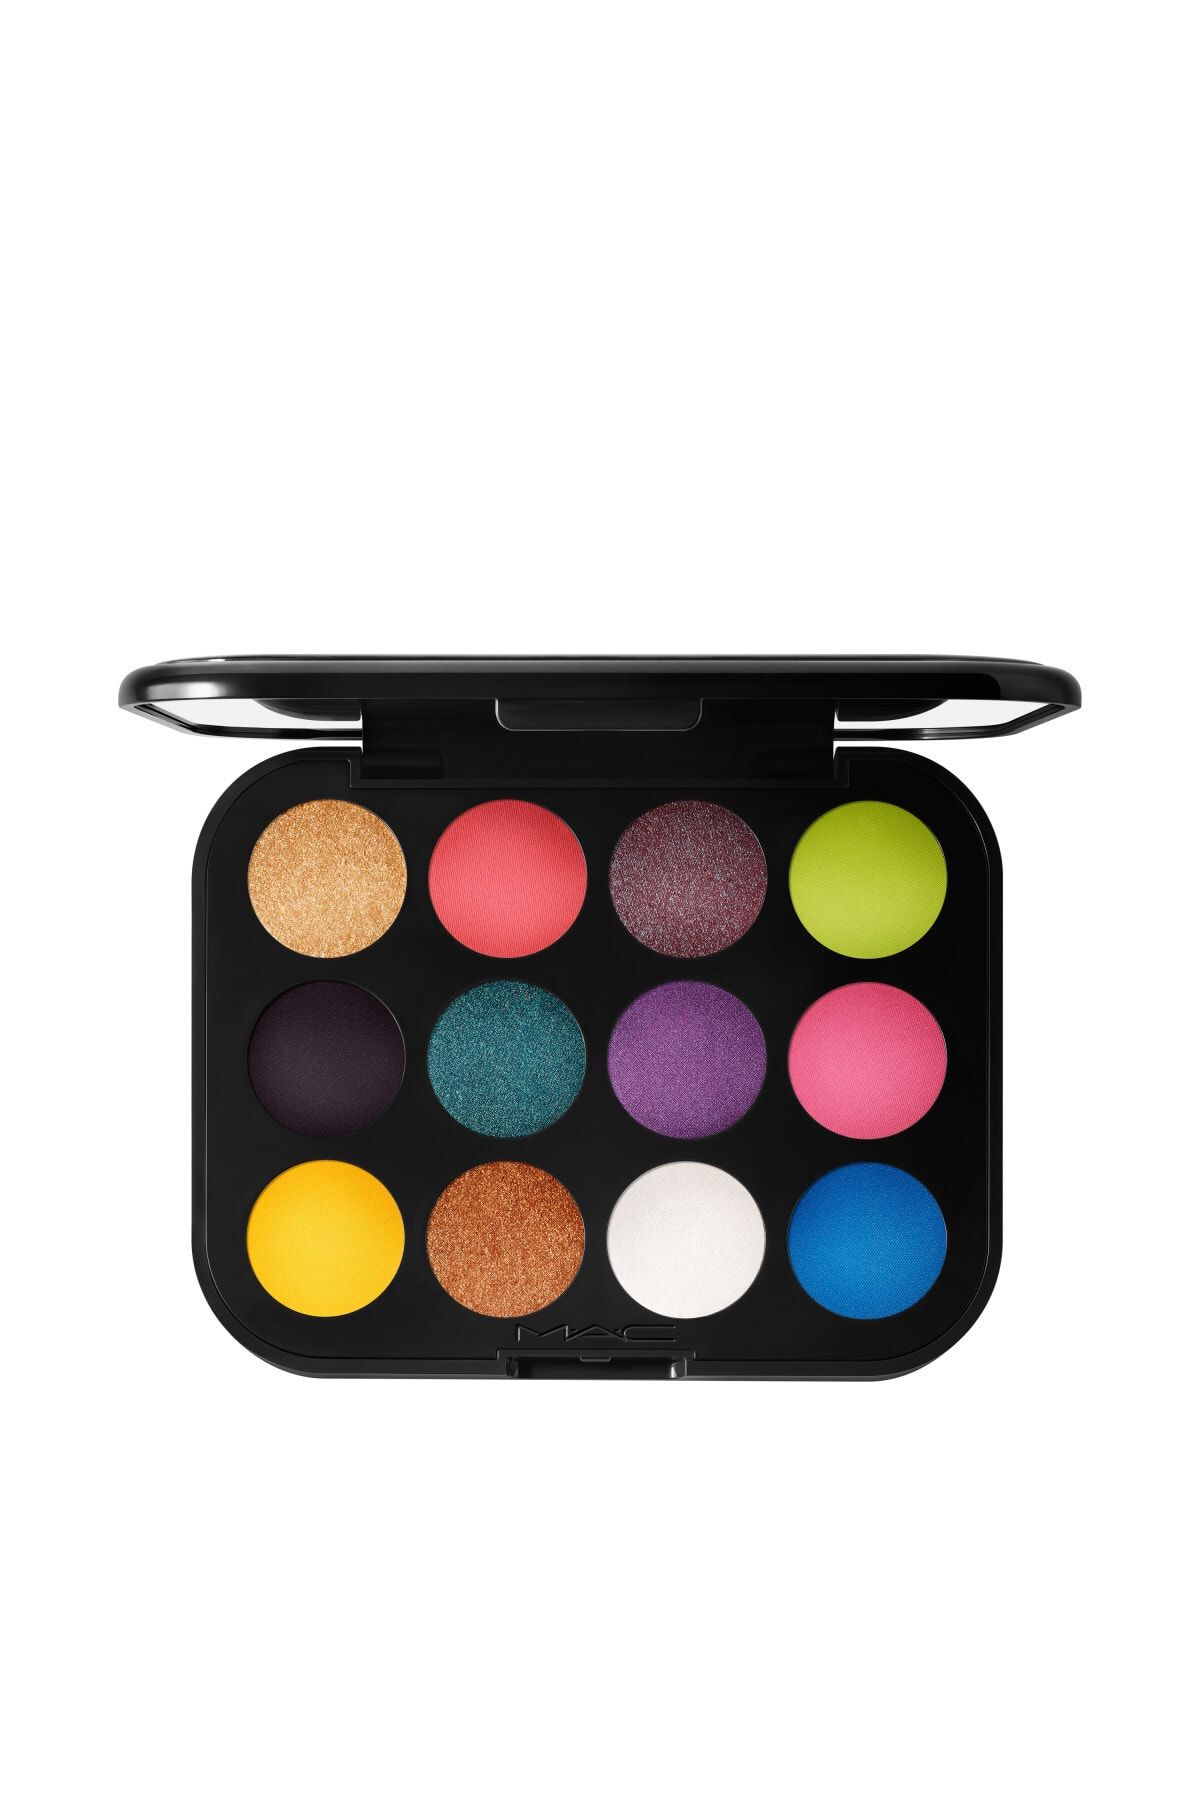 Mac پالت سایه چشم Hi-Fi Colour جلوه ای خیره کننده با رنگ های شاد